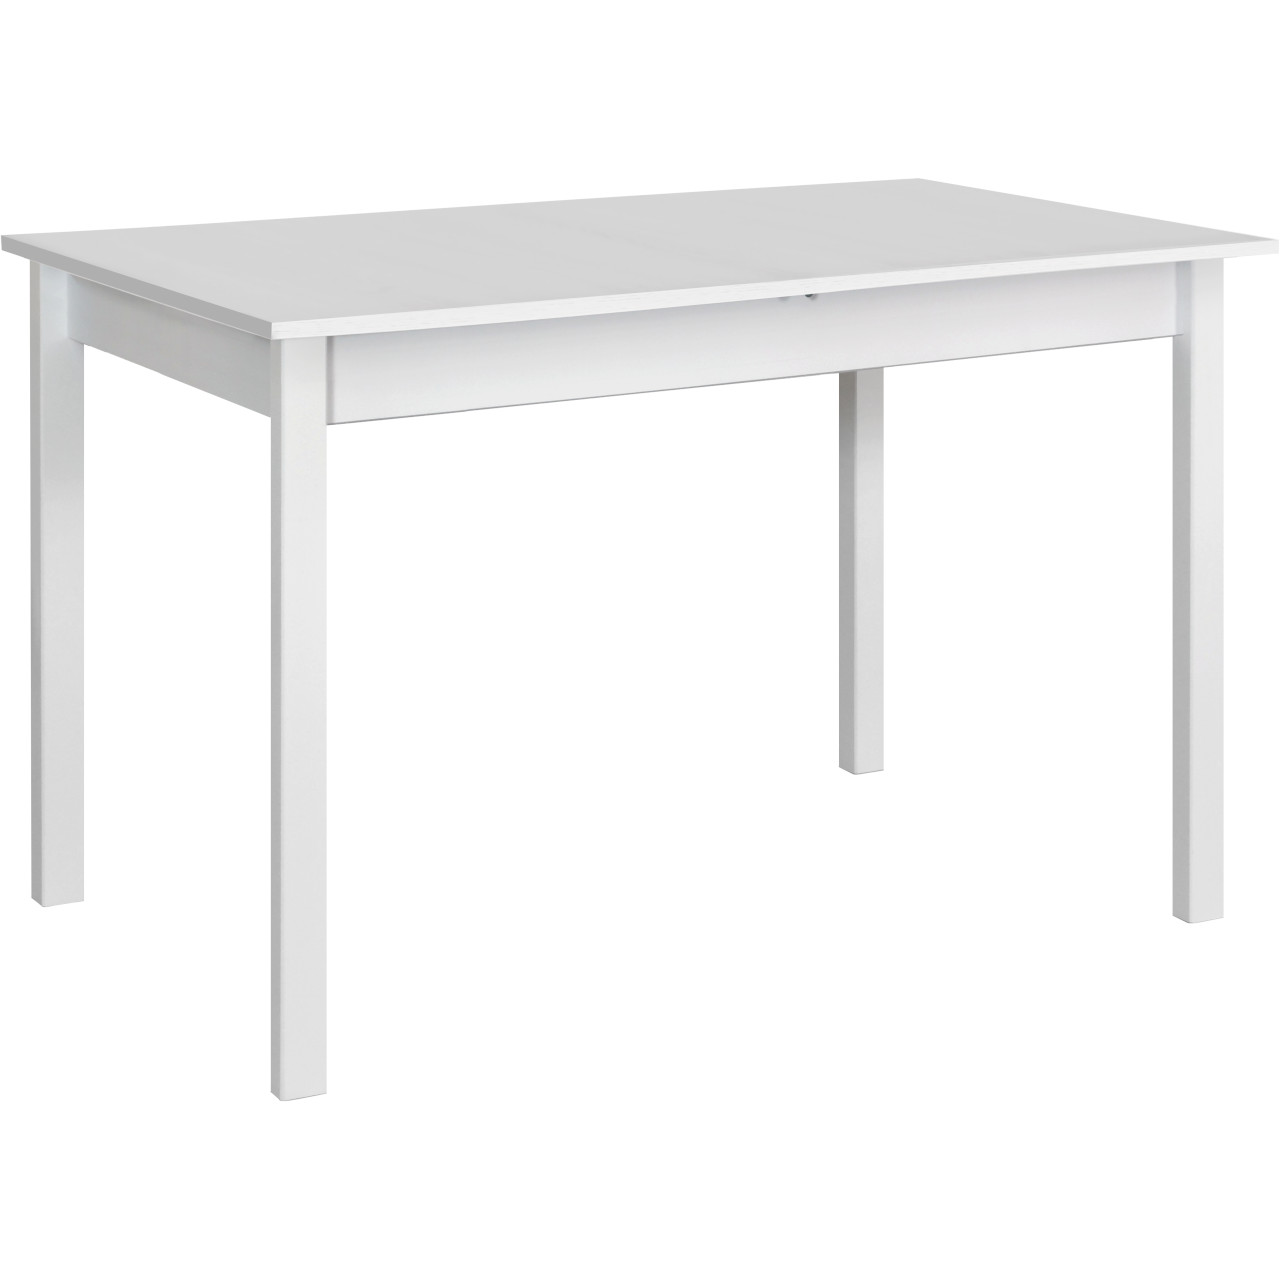 Stůl MAX 2 60x110 bílý laminát